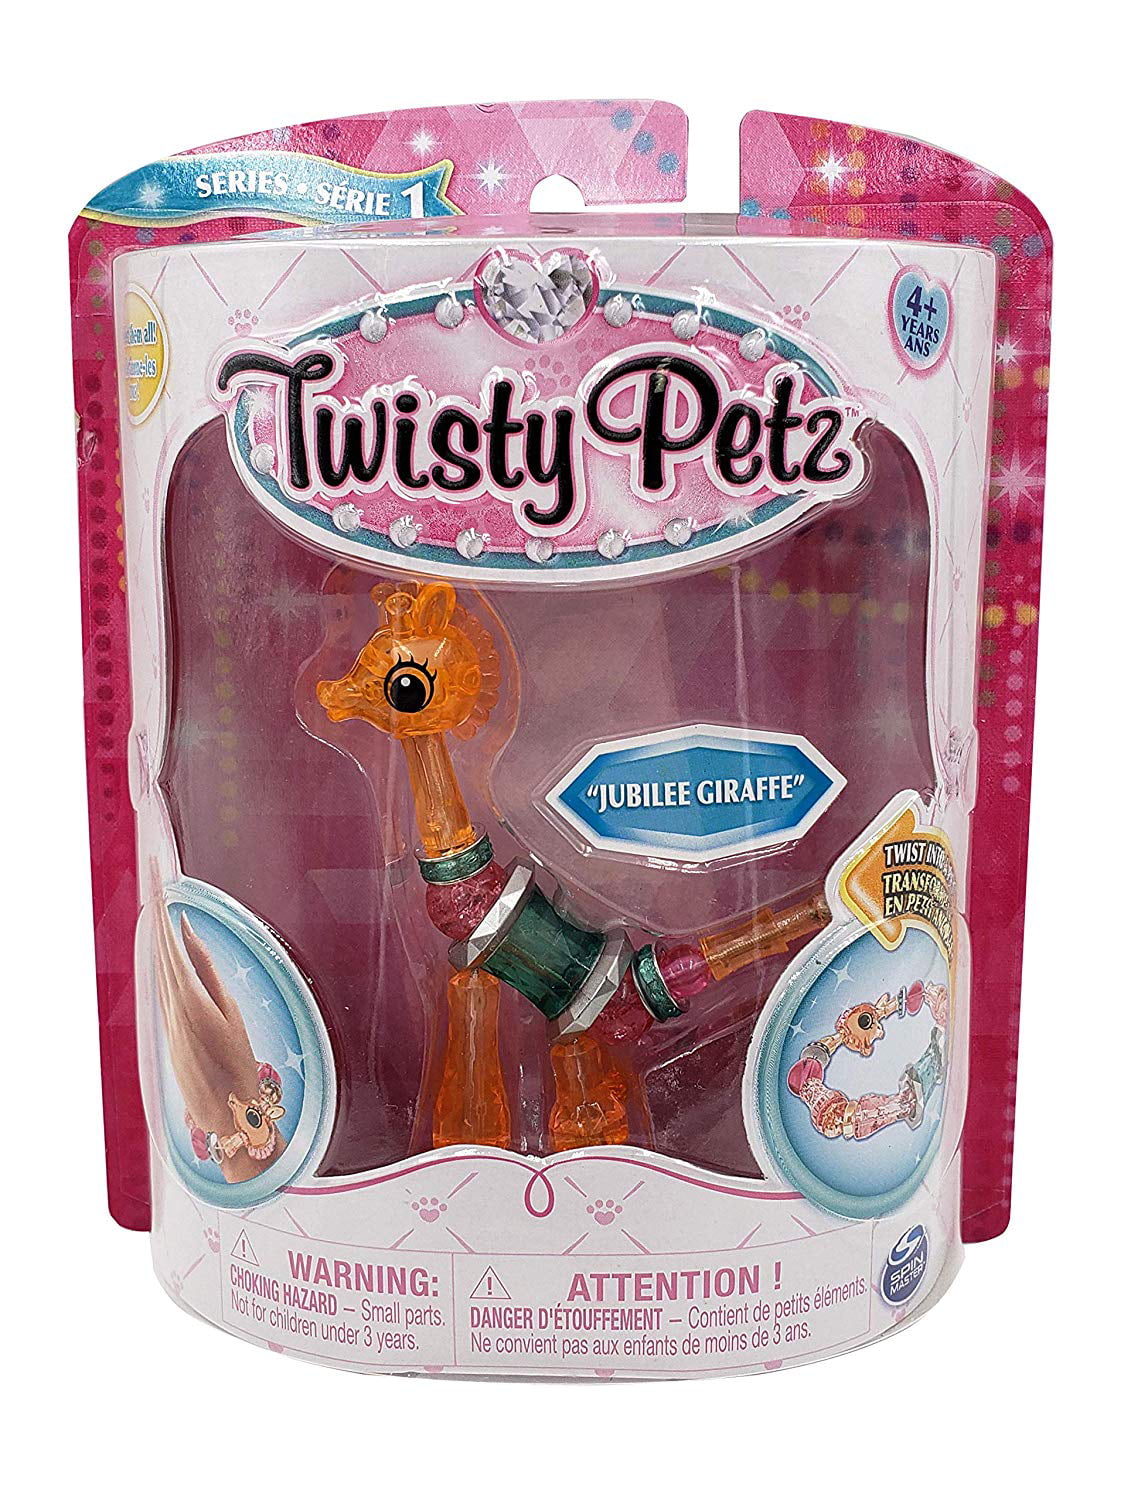 Twisty Petz Jubilee Giraffe Twist Into a Pet Toy Series 1 Bracelet Spin Master for sale online 